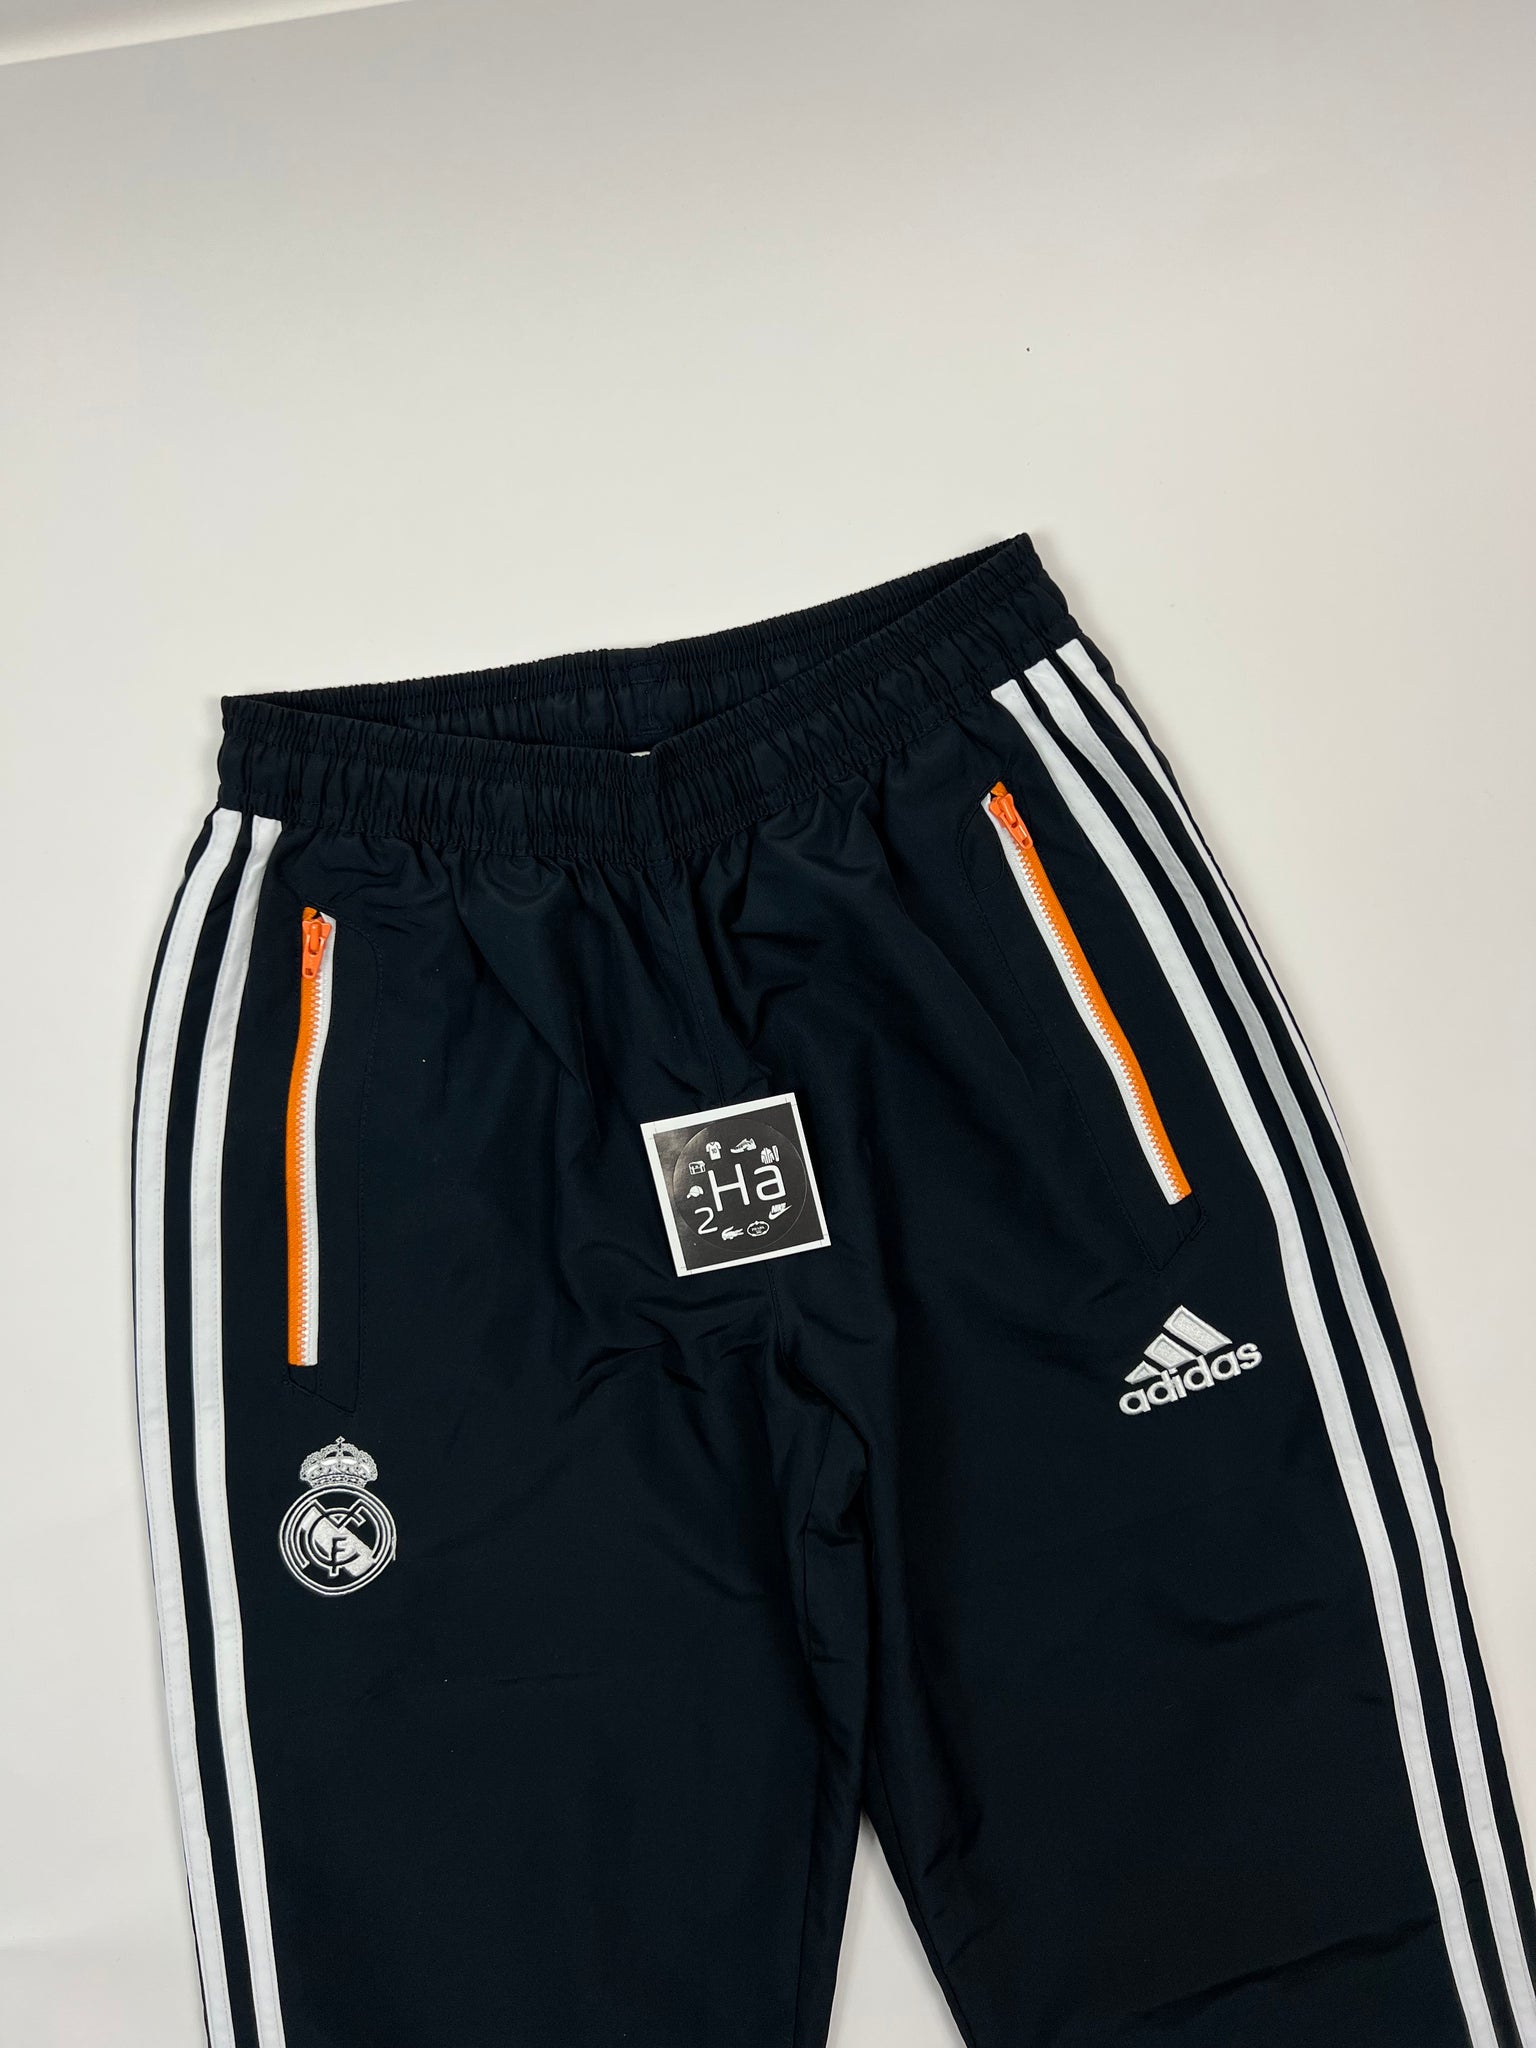 Adidas Real Madrid Tracksuit (Kids XL)